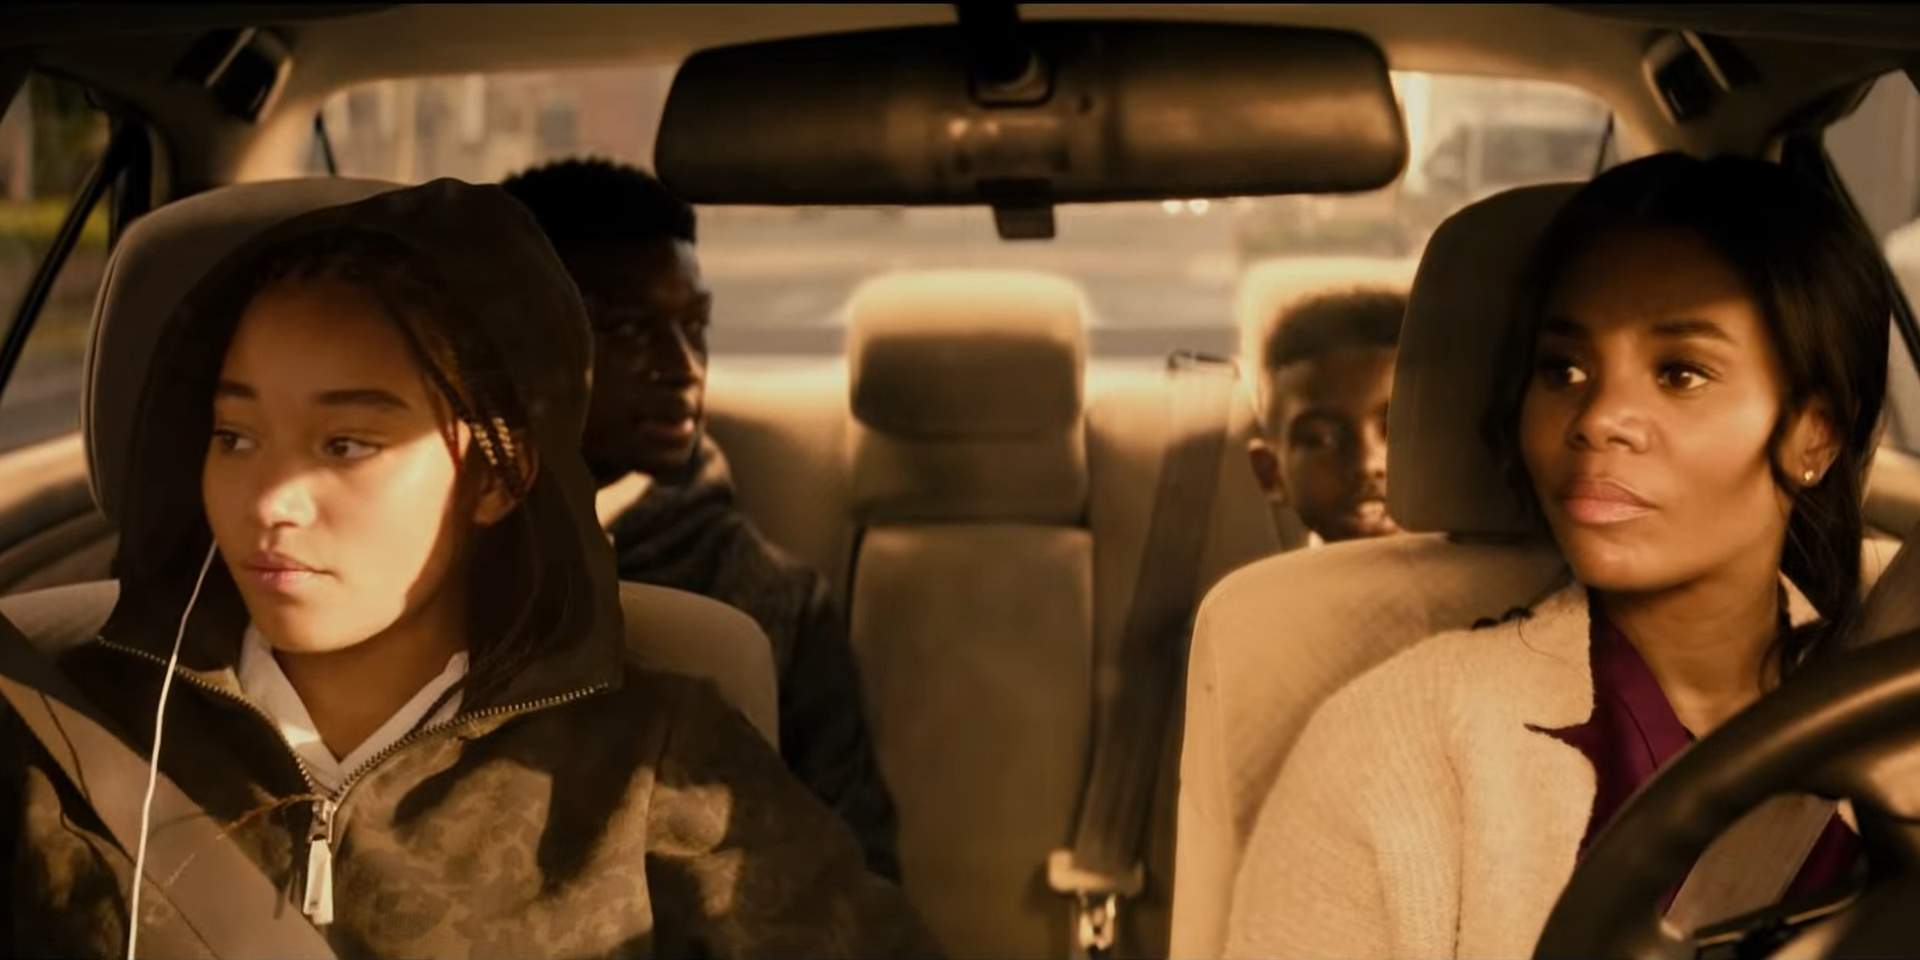 Starr sitzt mit ihrer Familie im Auto. Ihre Mutter sitzt am Steuer, auf der Rückbank ihre beiden Brüder.